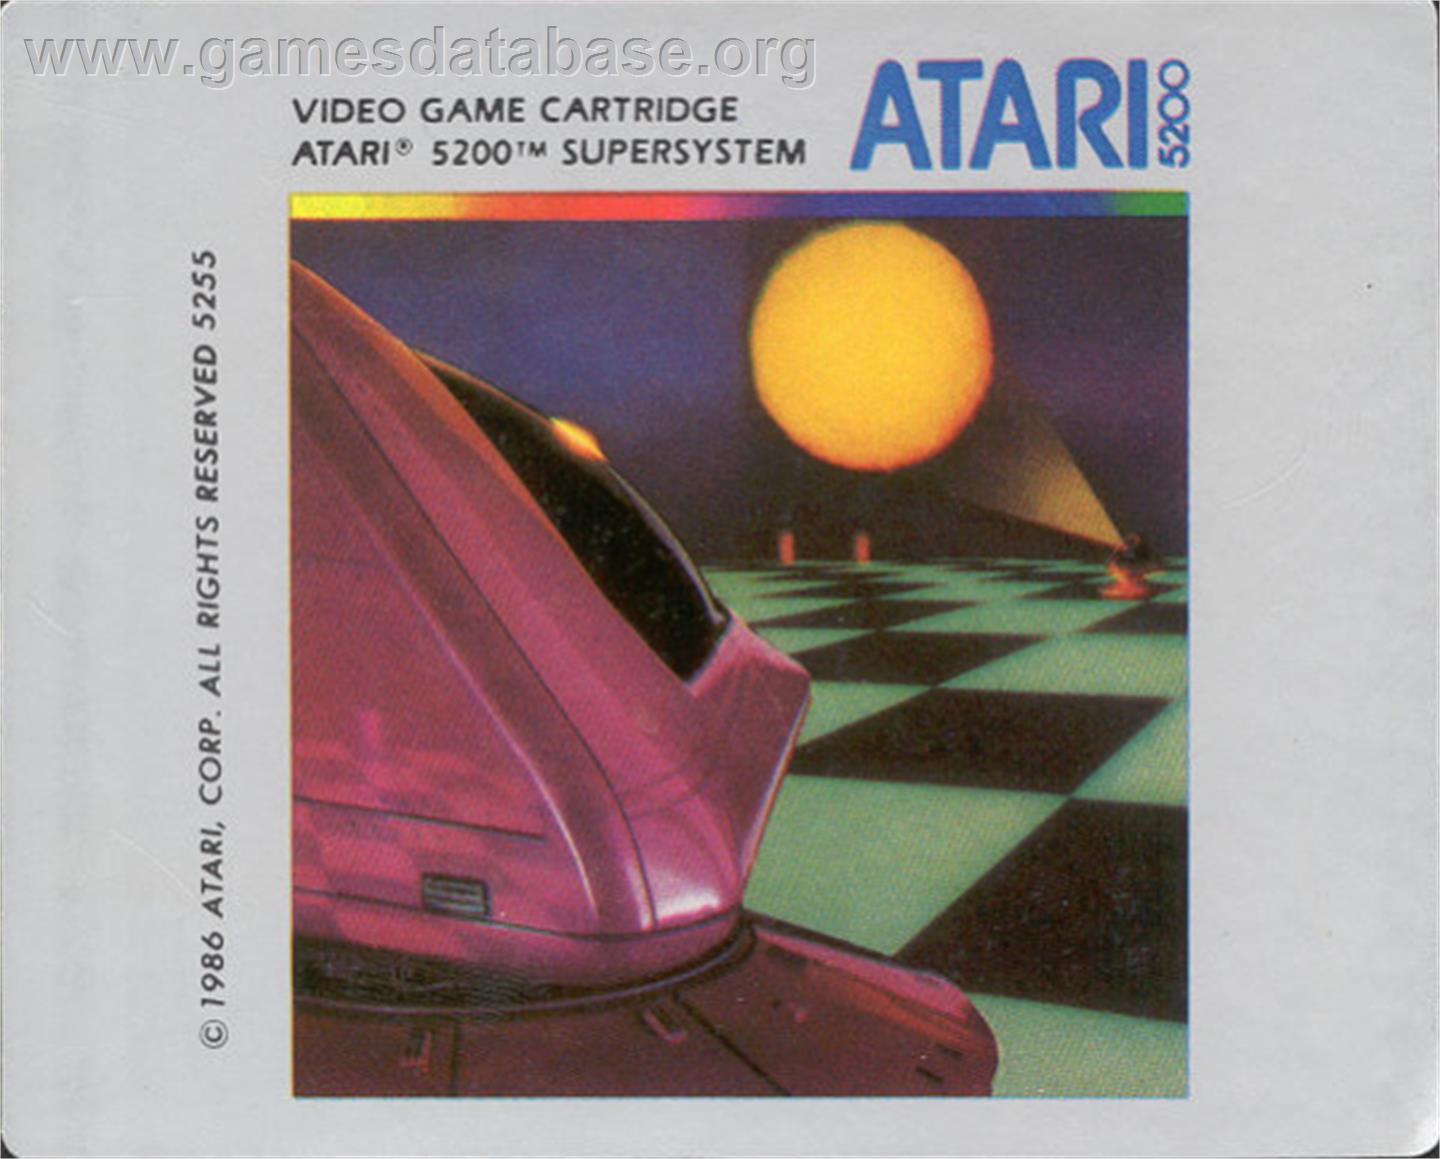 Ballblazer - Atari 5200 - Artwork - Cartridge Top